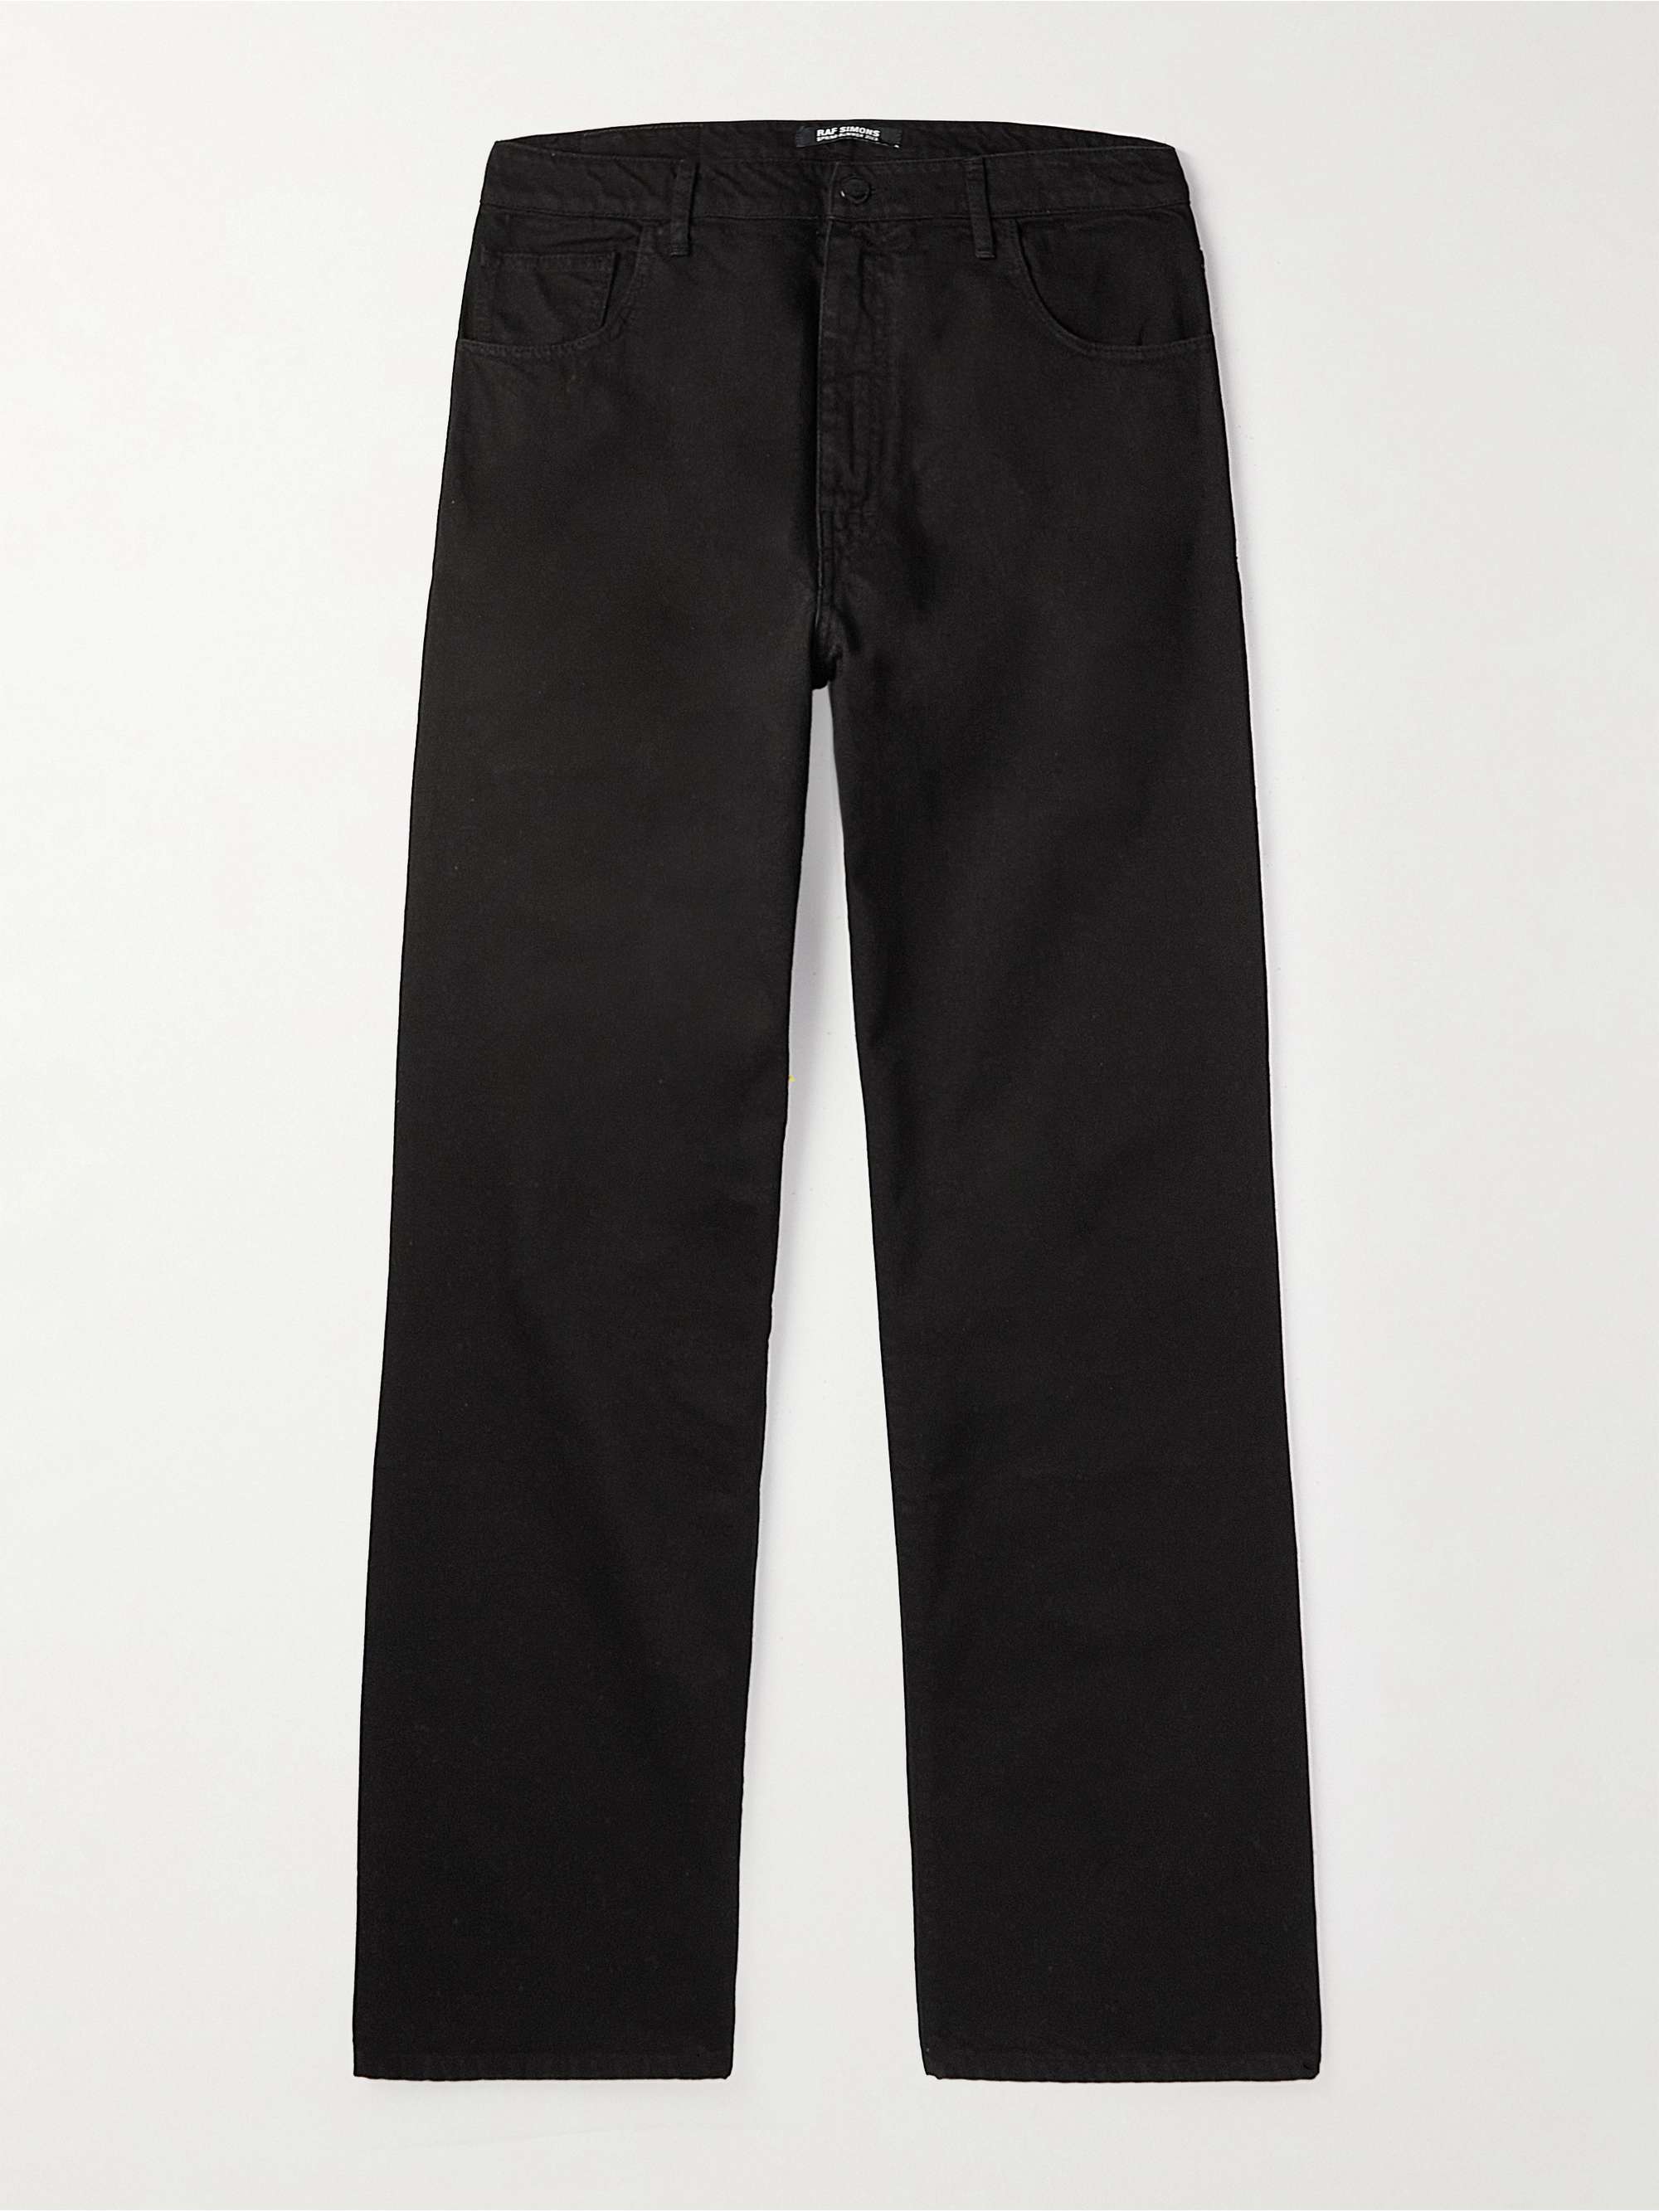 RAF SIMONS Workwear Straight-Leg Jeans for Men | MR PORTER